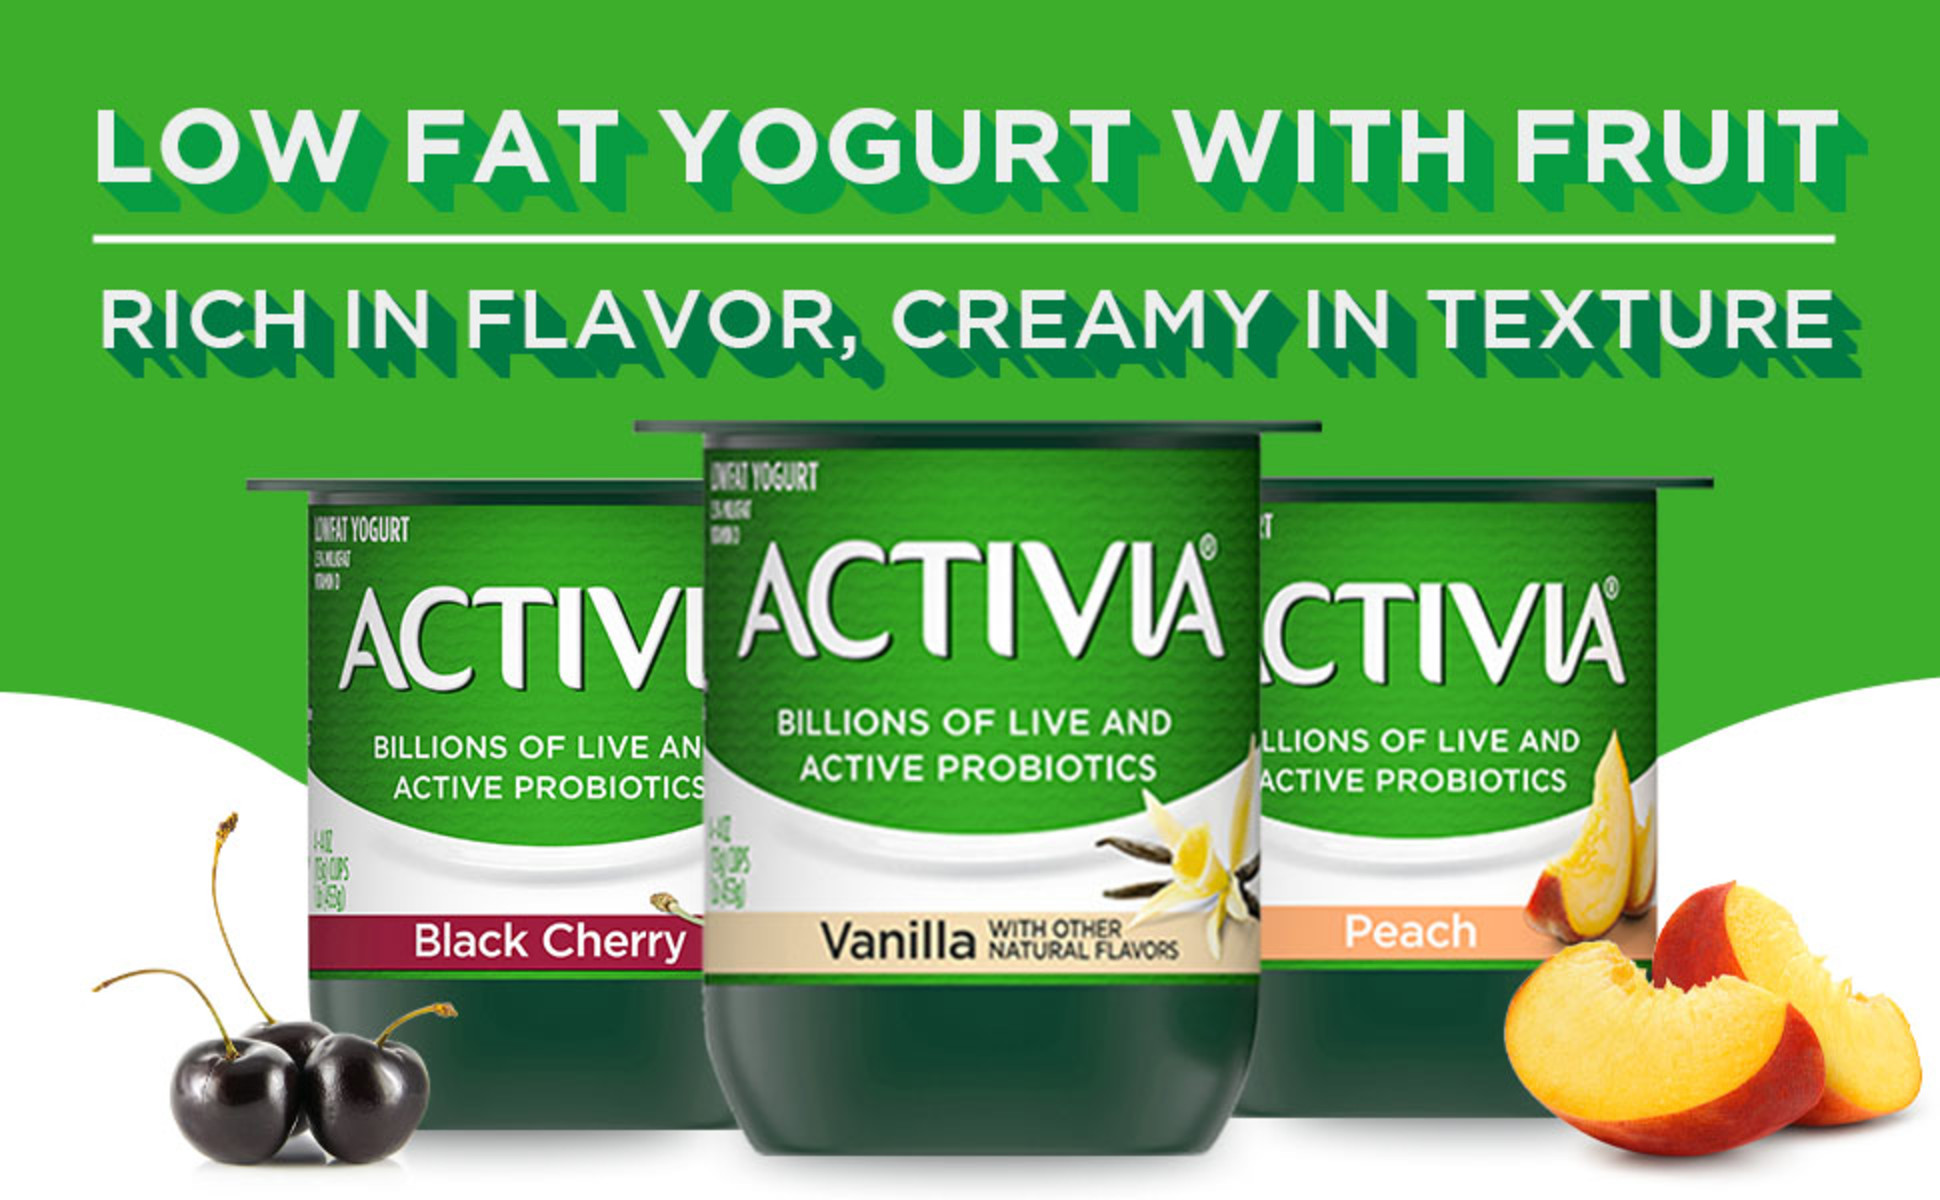 Activia 60 Calories Strawberry Banana & Peach Nonfat Probiotic Yogurt Cups,  4 oz, 12 Count